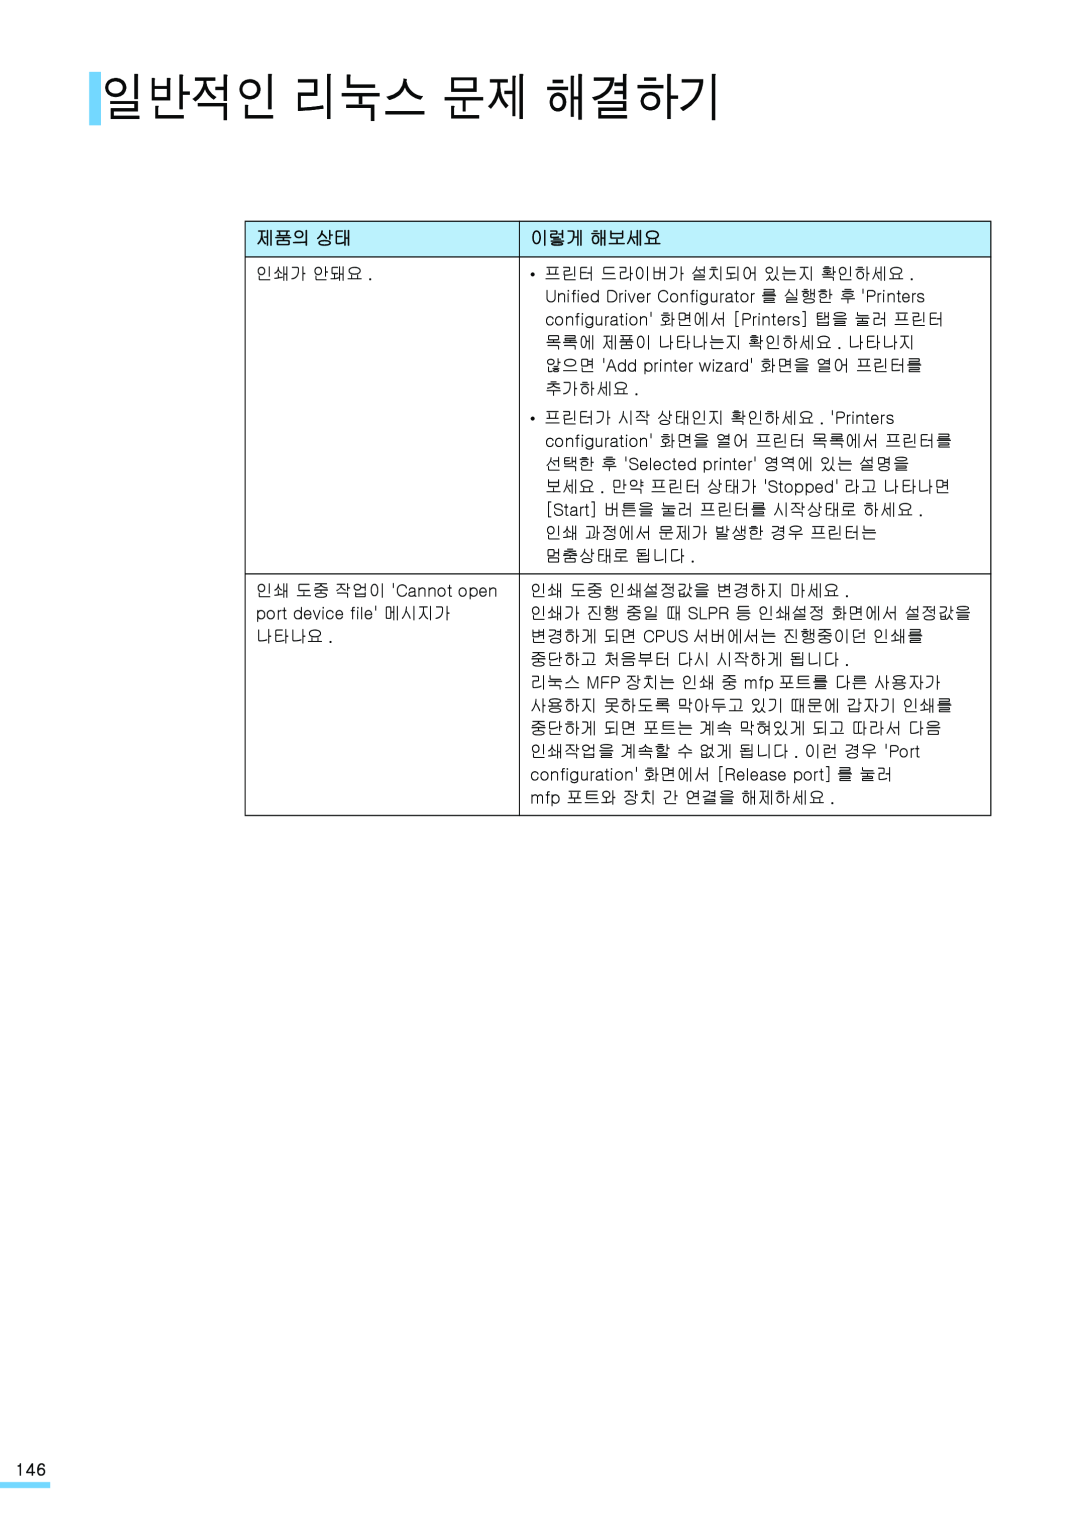 Samsung ML-2571N manual 일반적인 리눅스 문제 해결하기, 제품의 상태, 이렇게 해보세요 